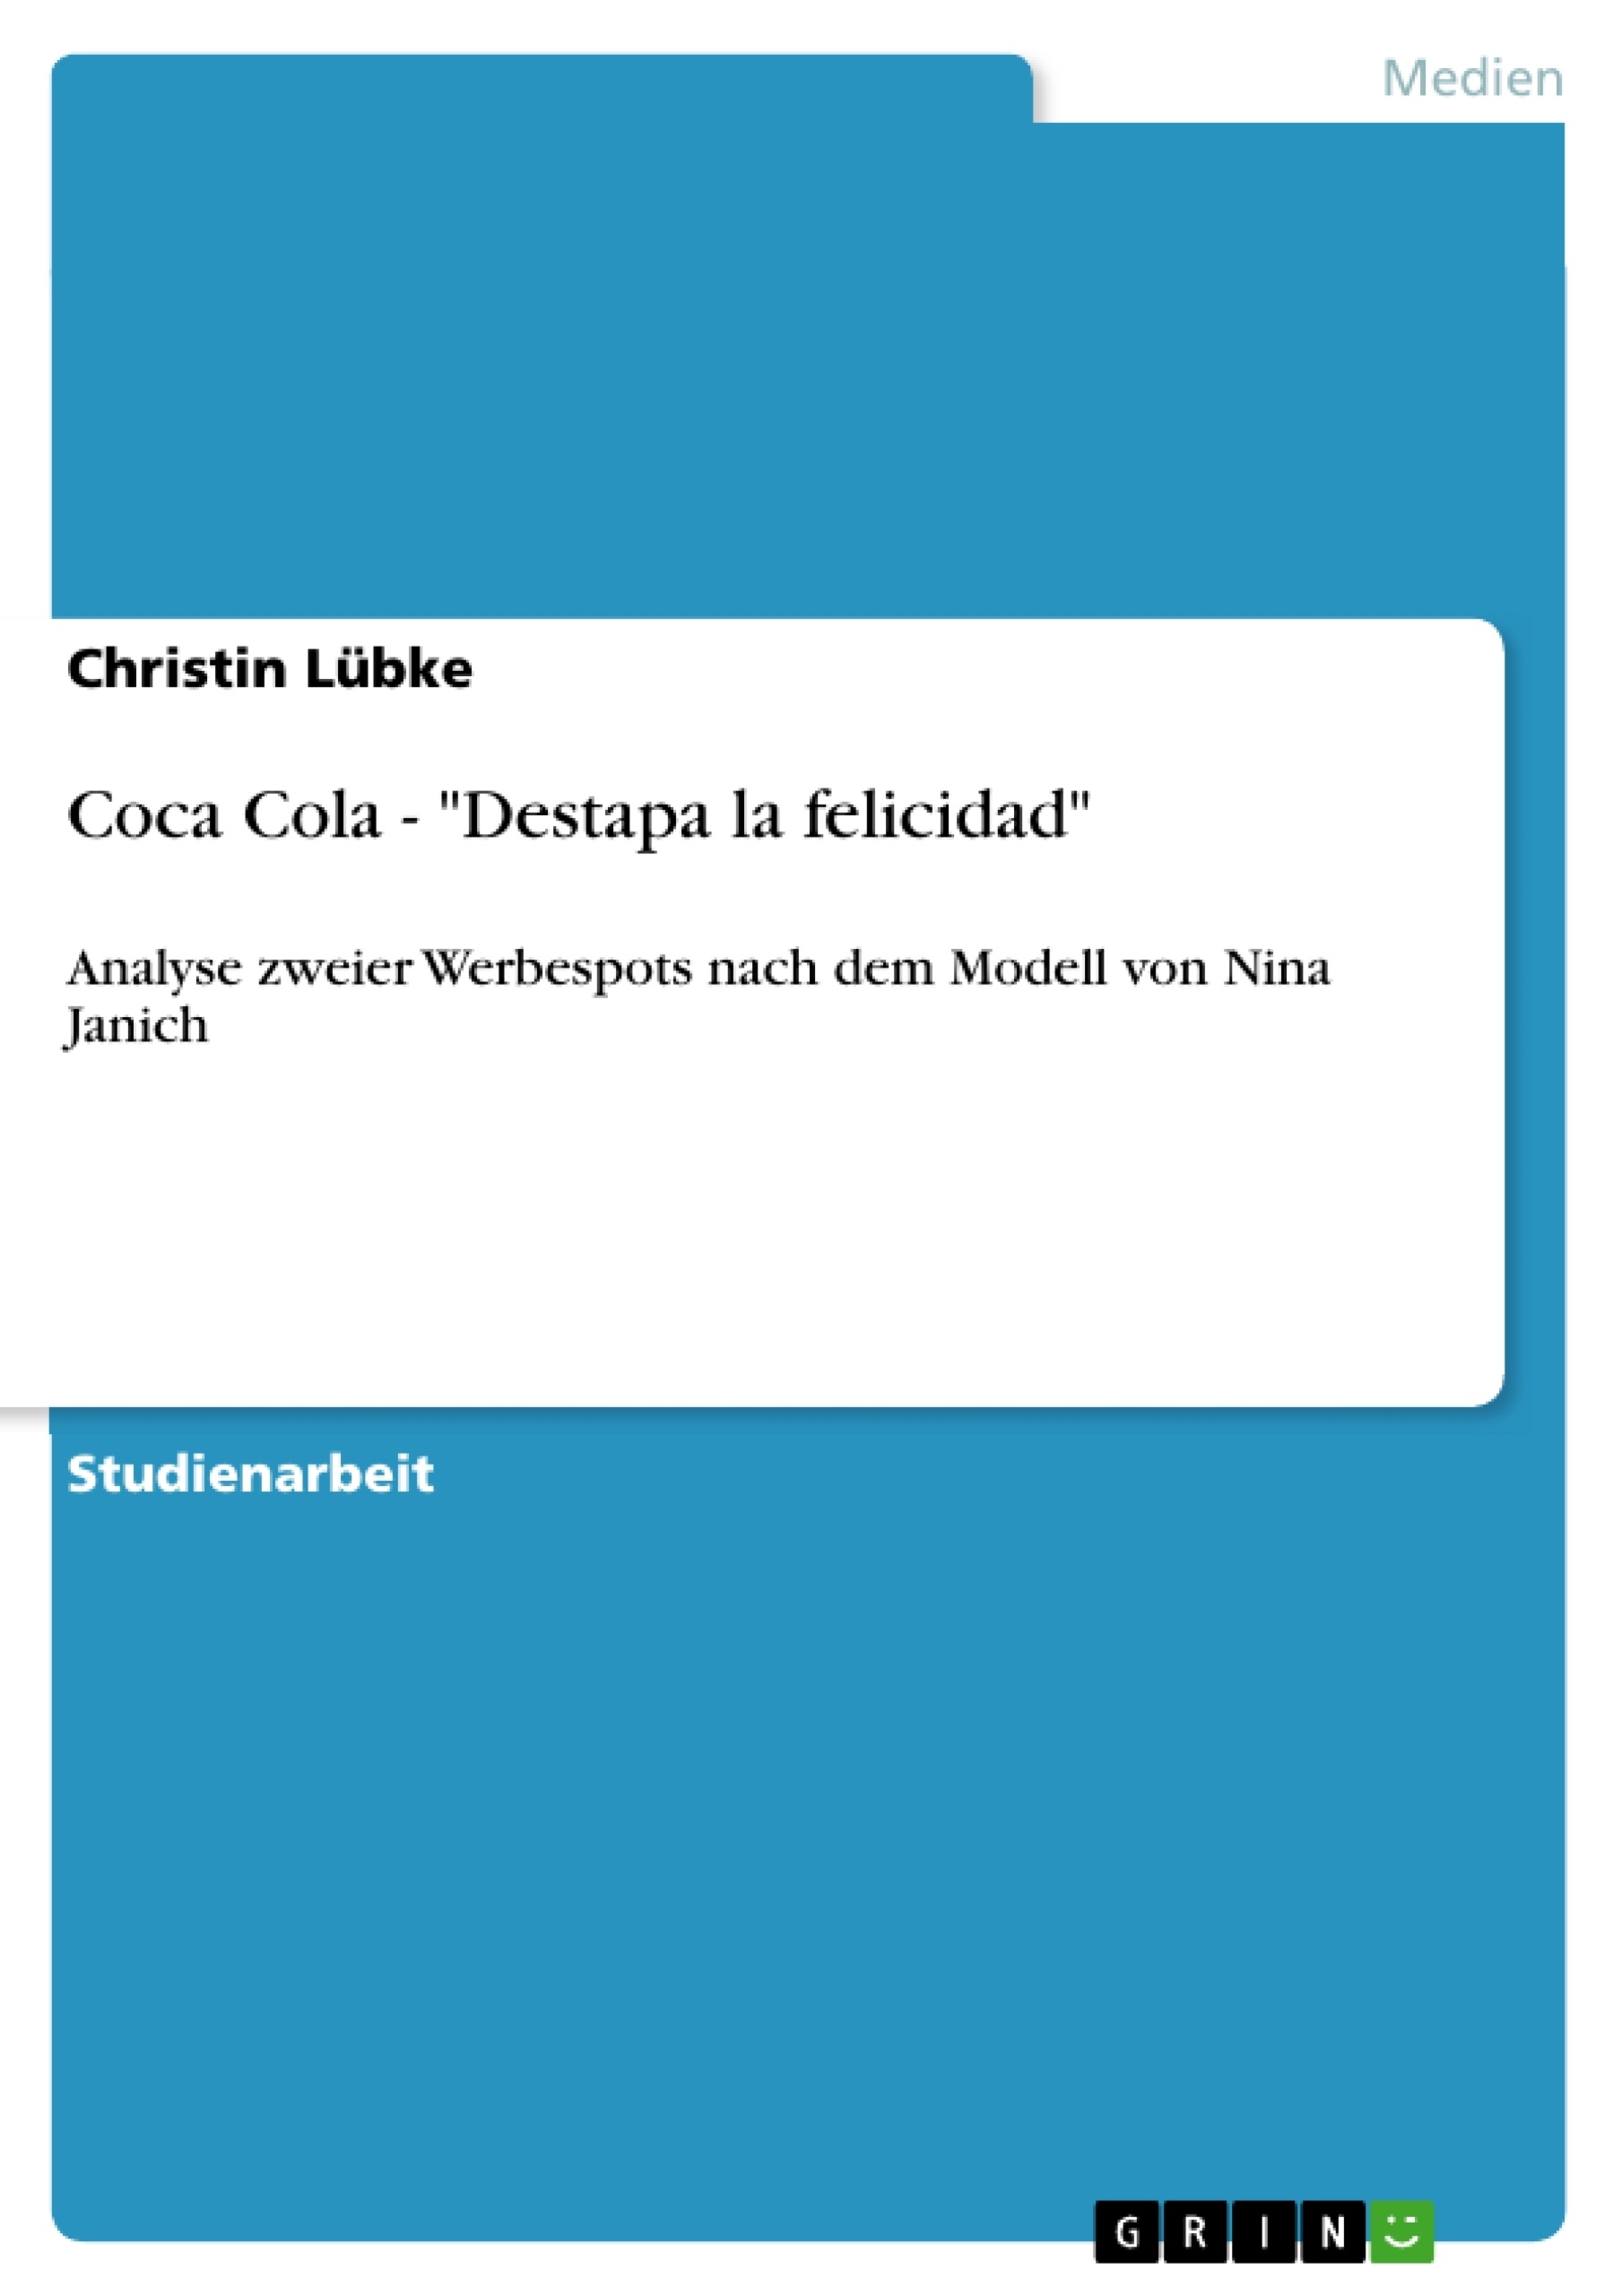 Titre: Coca Cola - "Destapa la felicidad"